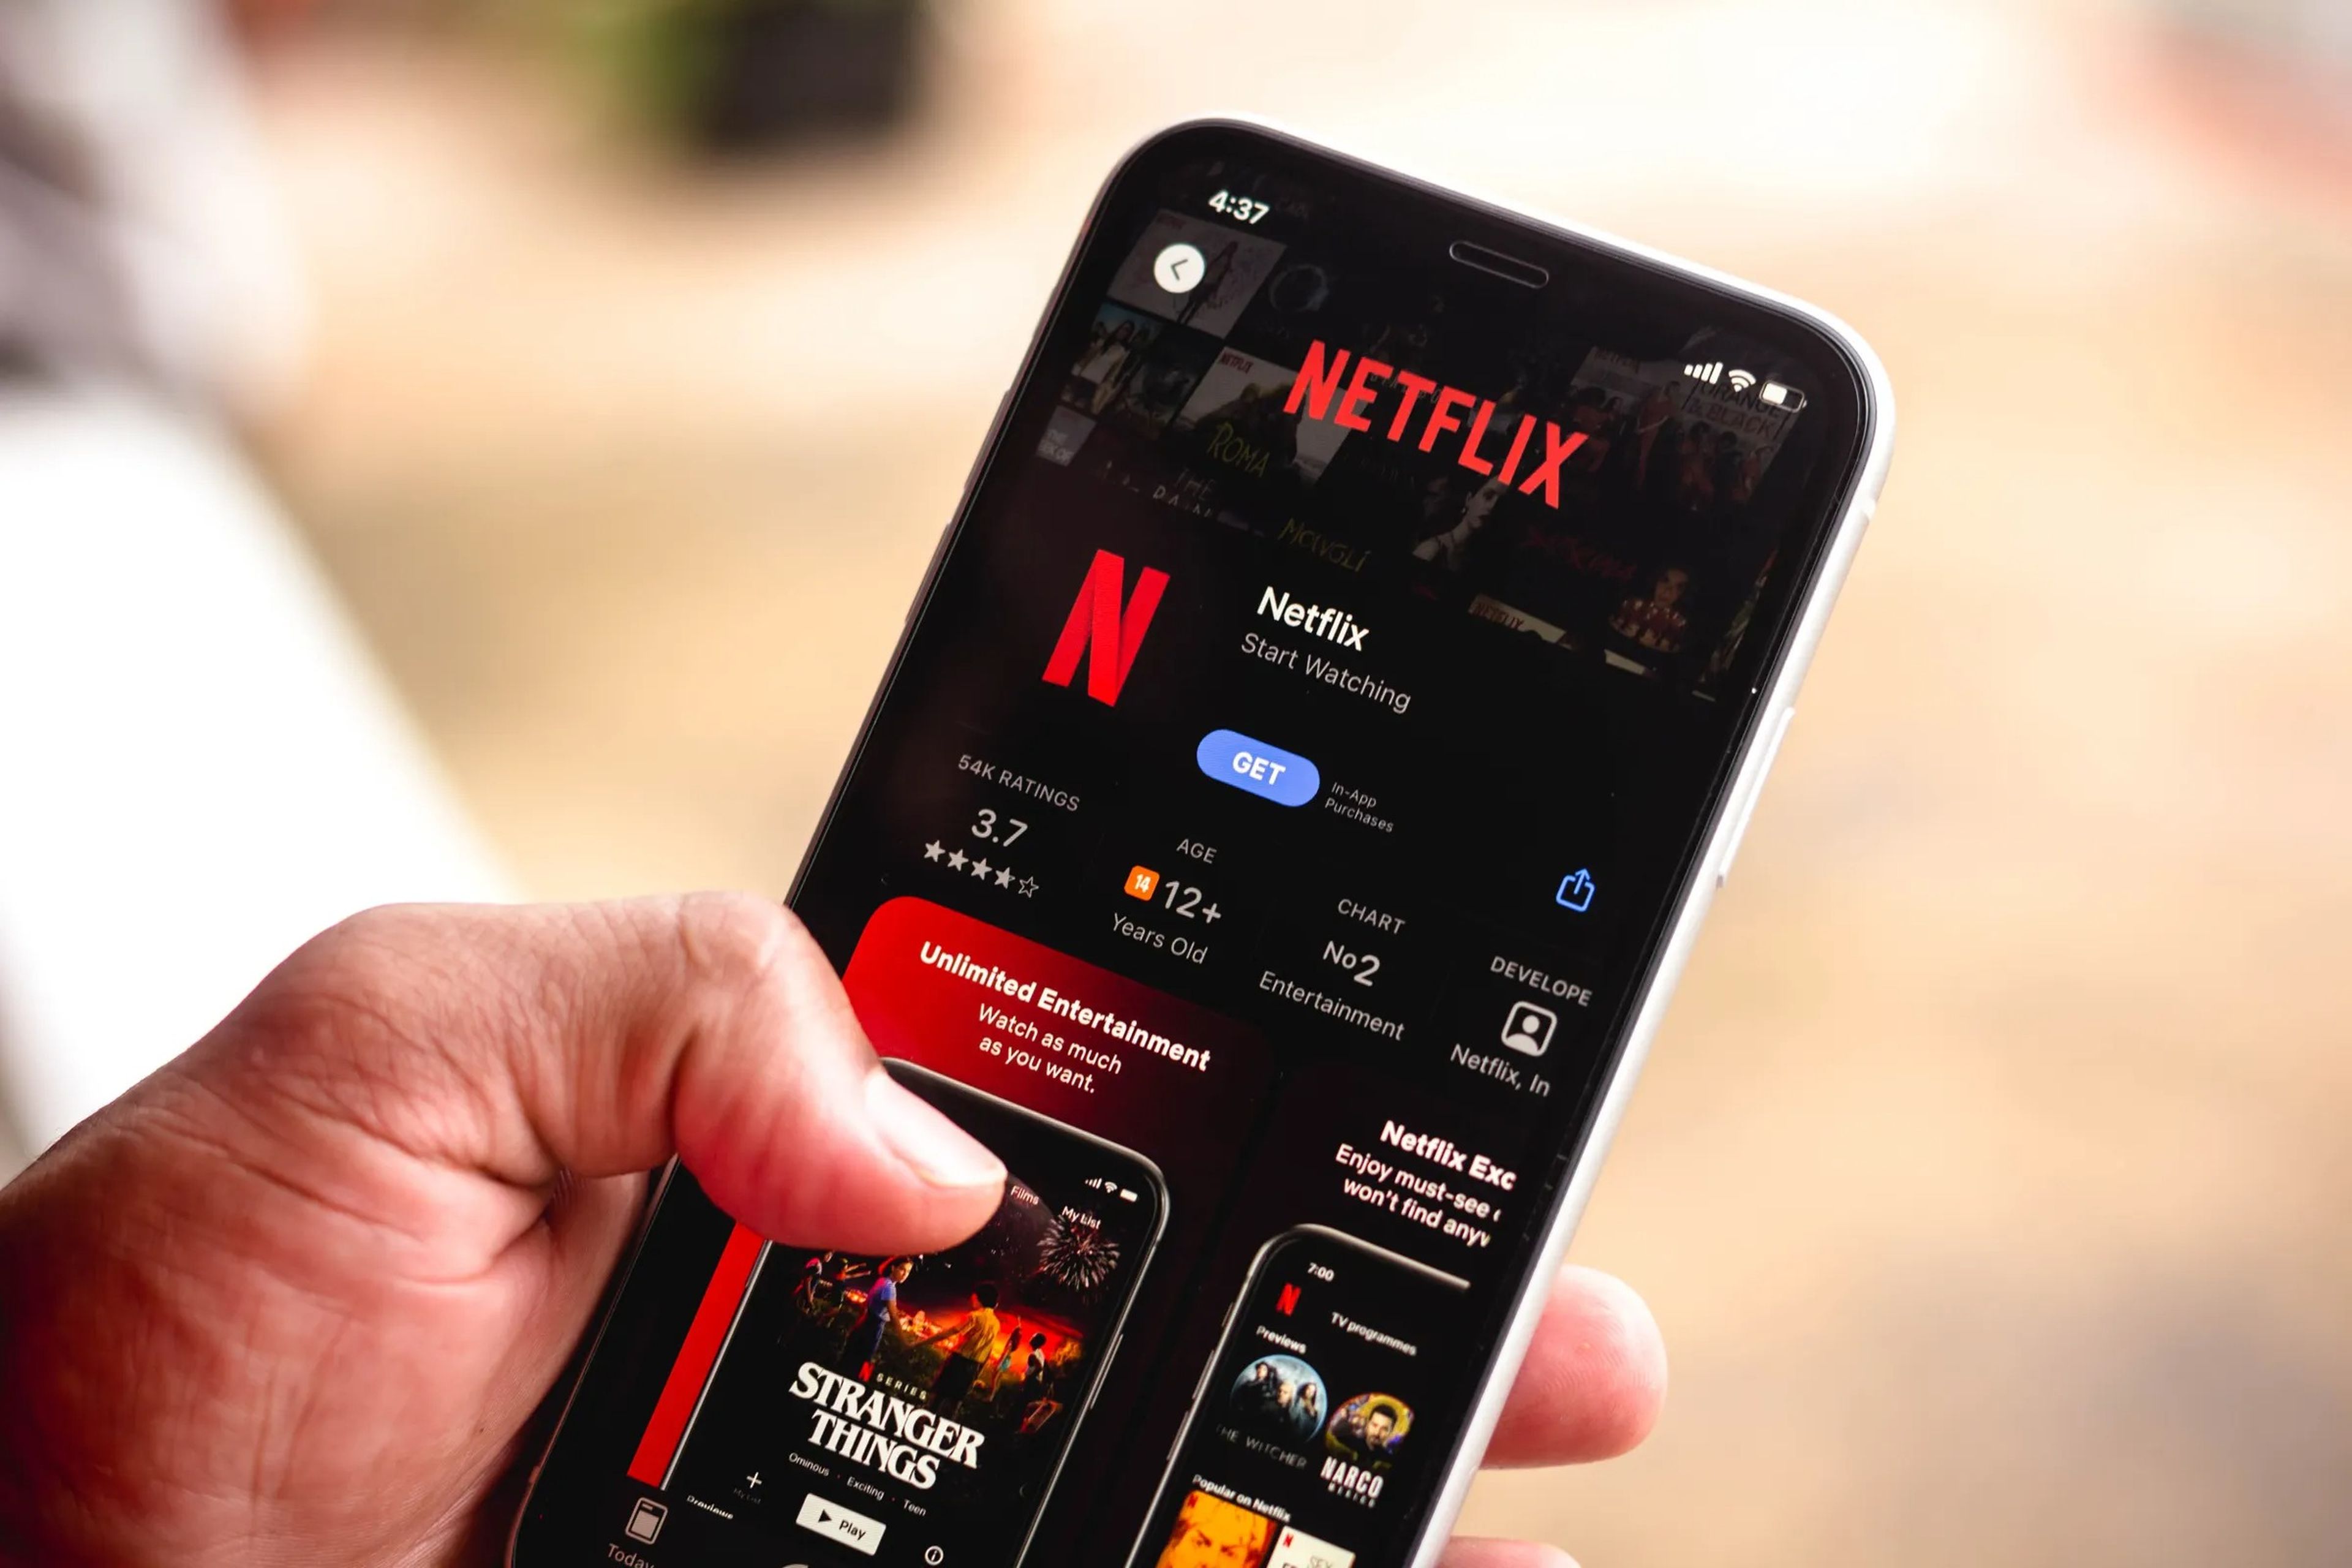 La nueva función de Netflix aparecerá pronto en la app para dispositivos iOS.